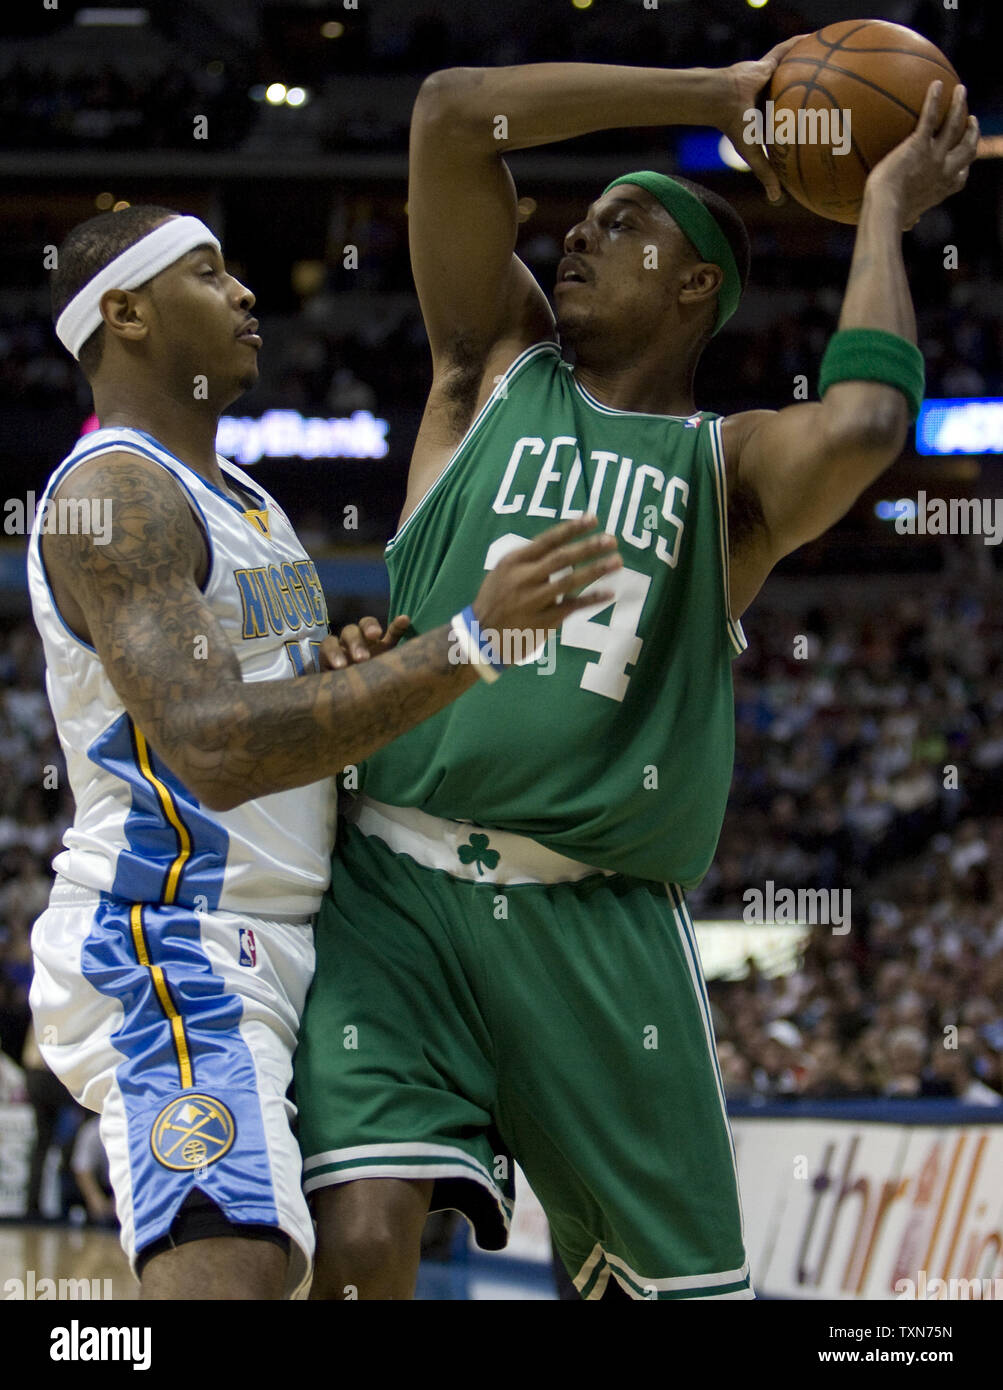 Boston Celtics adelante Paul Pierce (R) se mueve contra el avance de los Denver Nuggets Carmelo Anthony durante el primer trimestre en el Pepsi Center en Denver el 23 de febrero de 2009. (UPI foto/Gary C. Caskey) Foto de stock